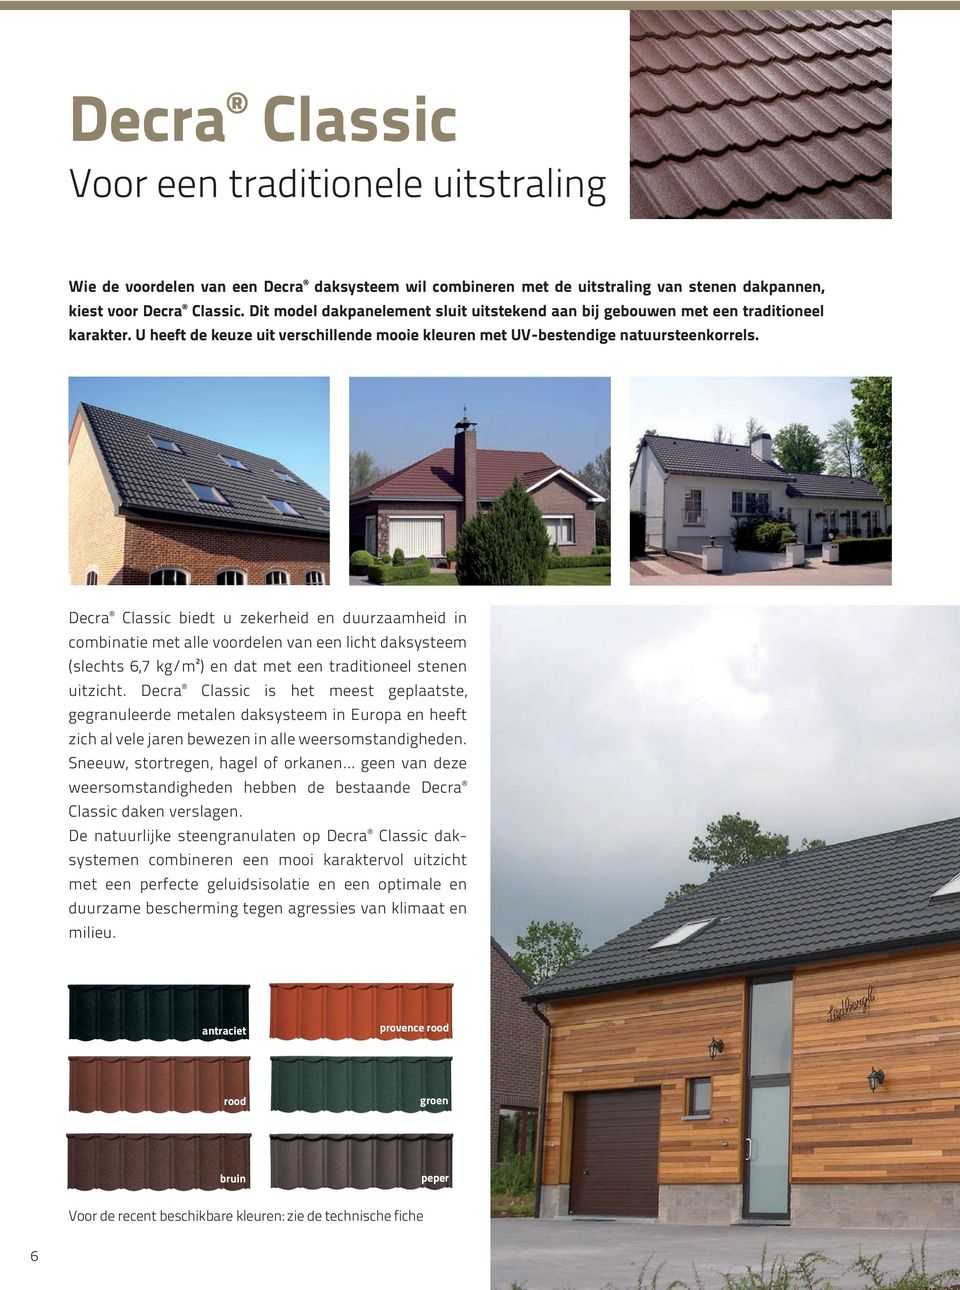 Decra Classic biedt u zekerheid en duurzaamheid in combinatie met alle voordelen van een licht daksysteem (slechts 6,7 kg/m²) en dat met een traditioneel stenen uitzicht.